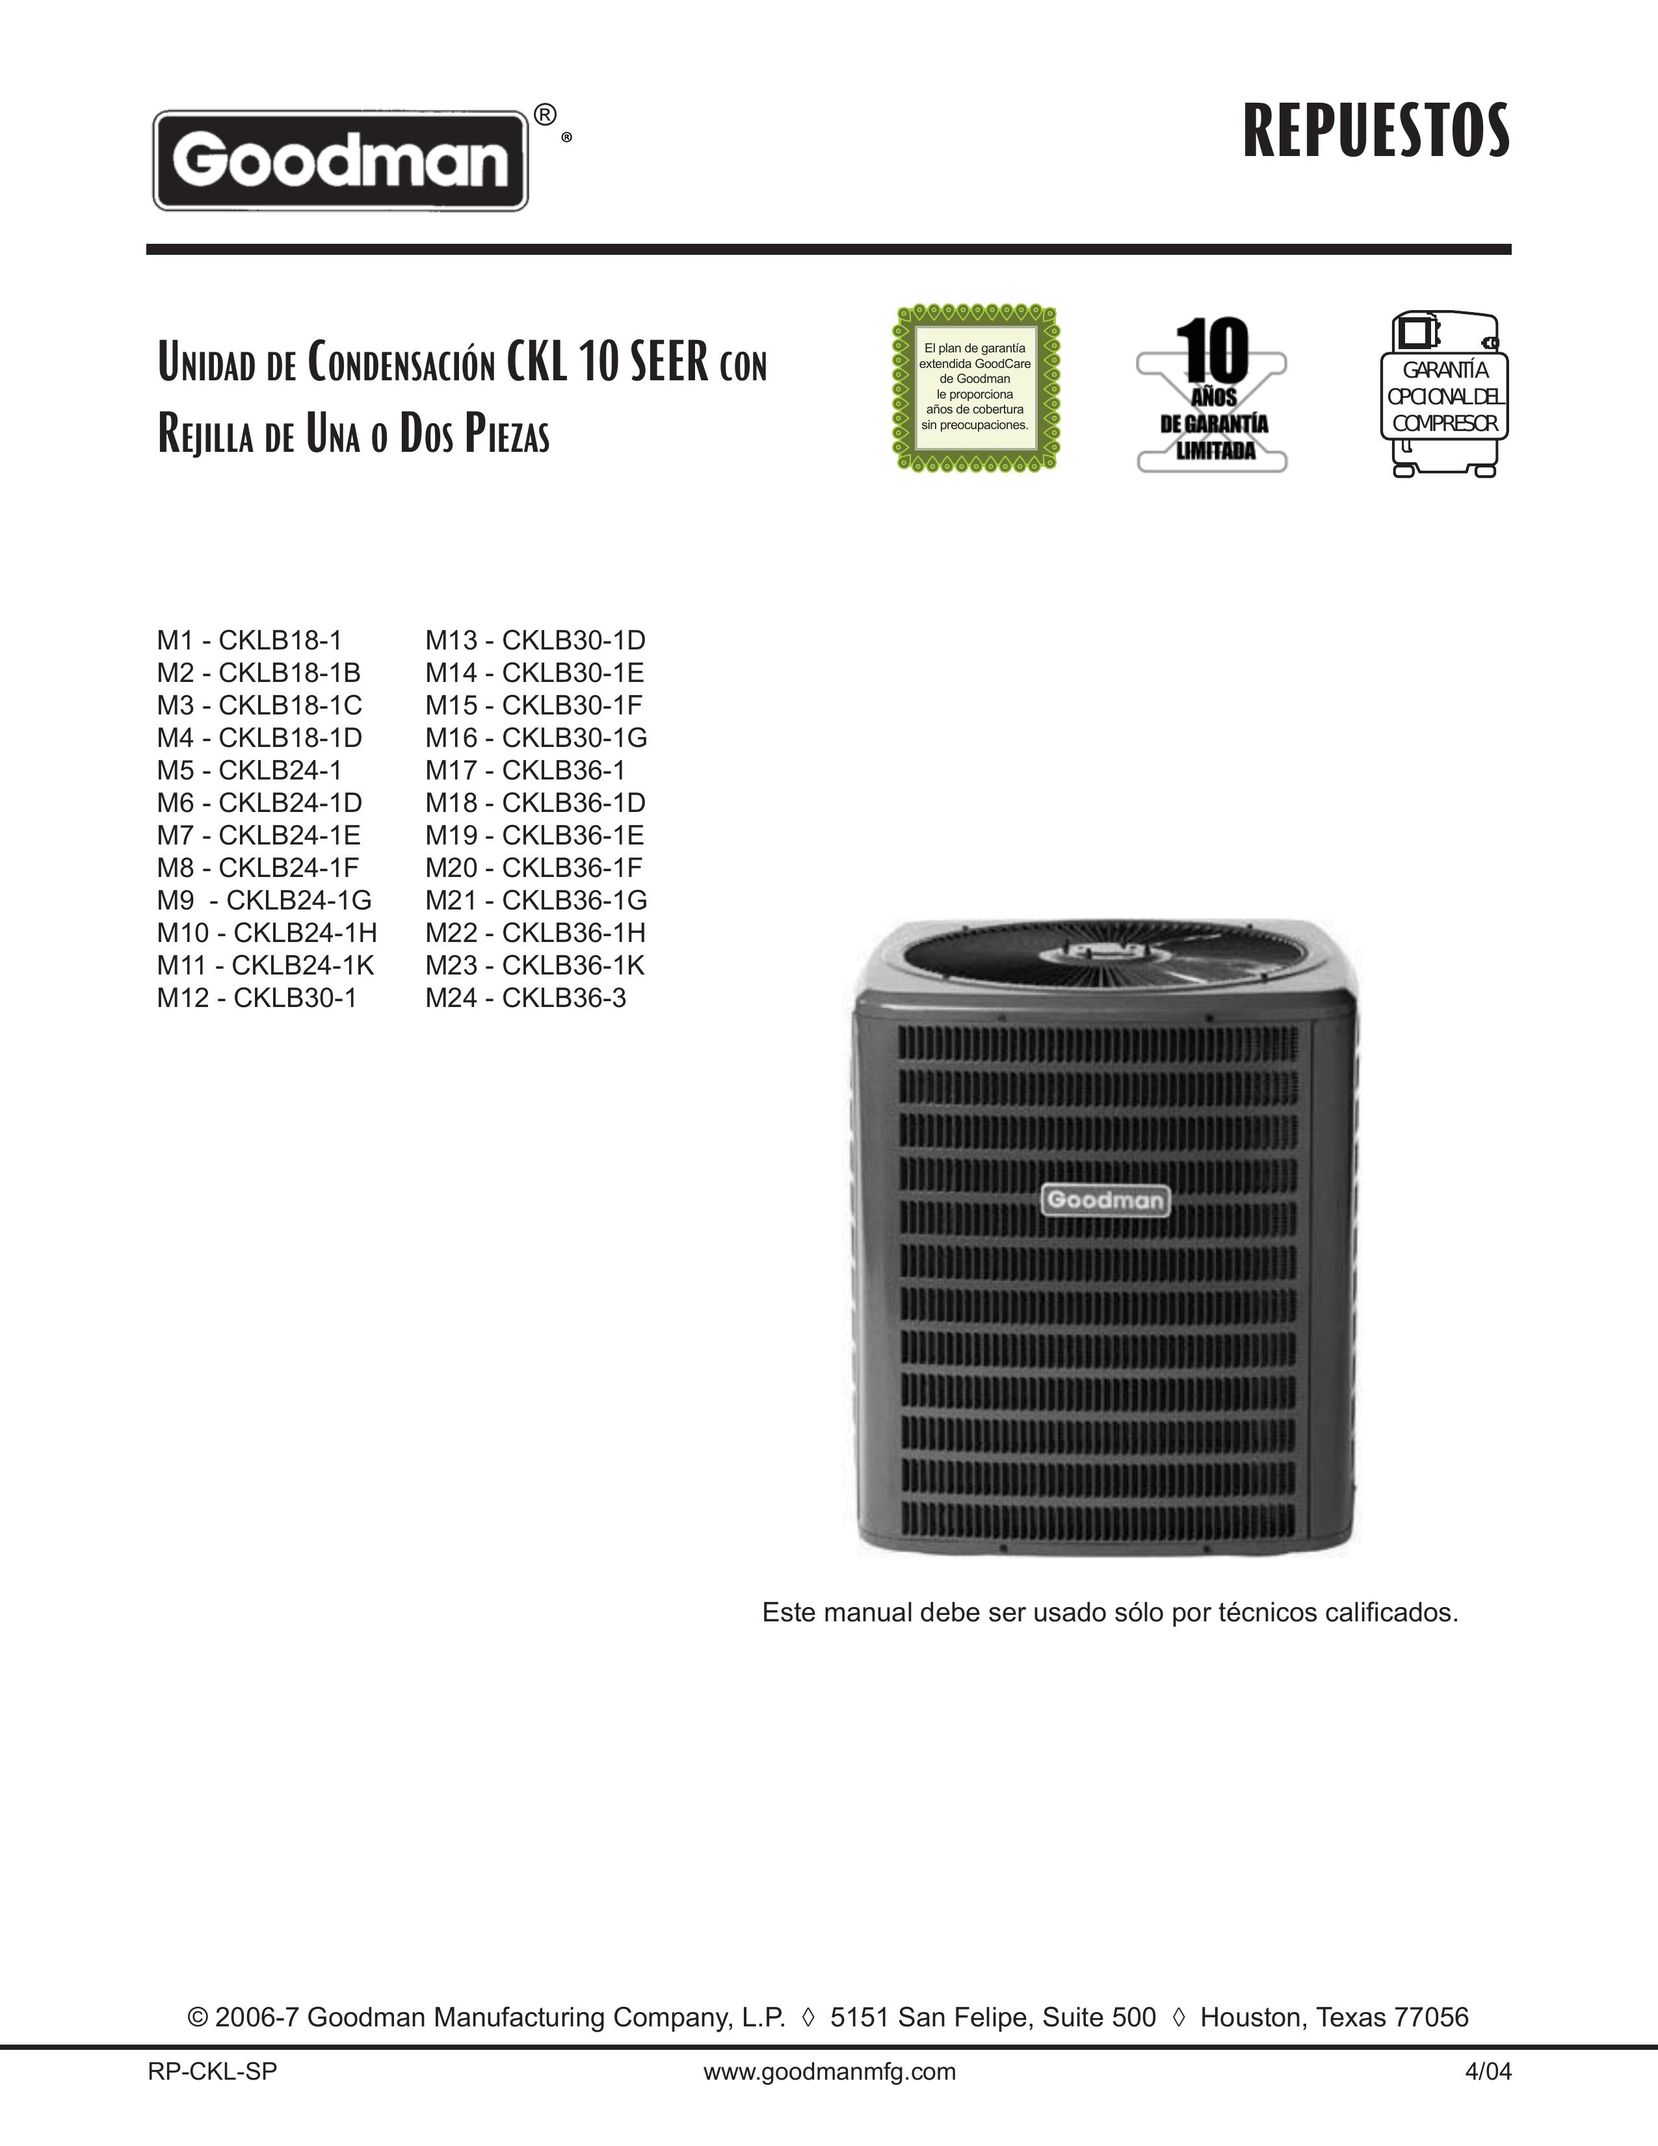 Goodman Mfg CKLB18-1C Air Conditioner User Manual